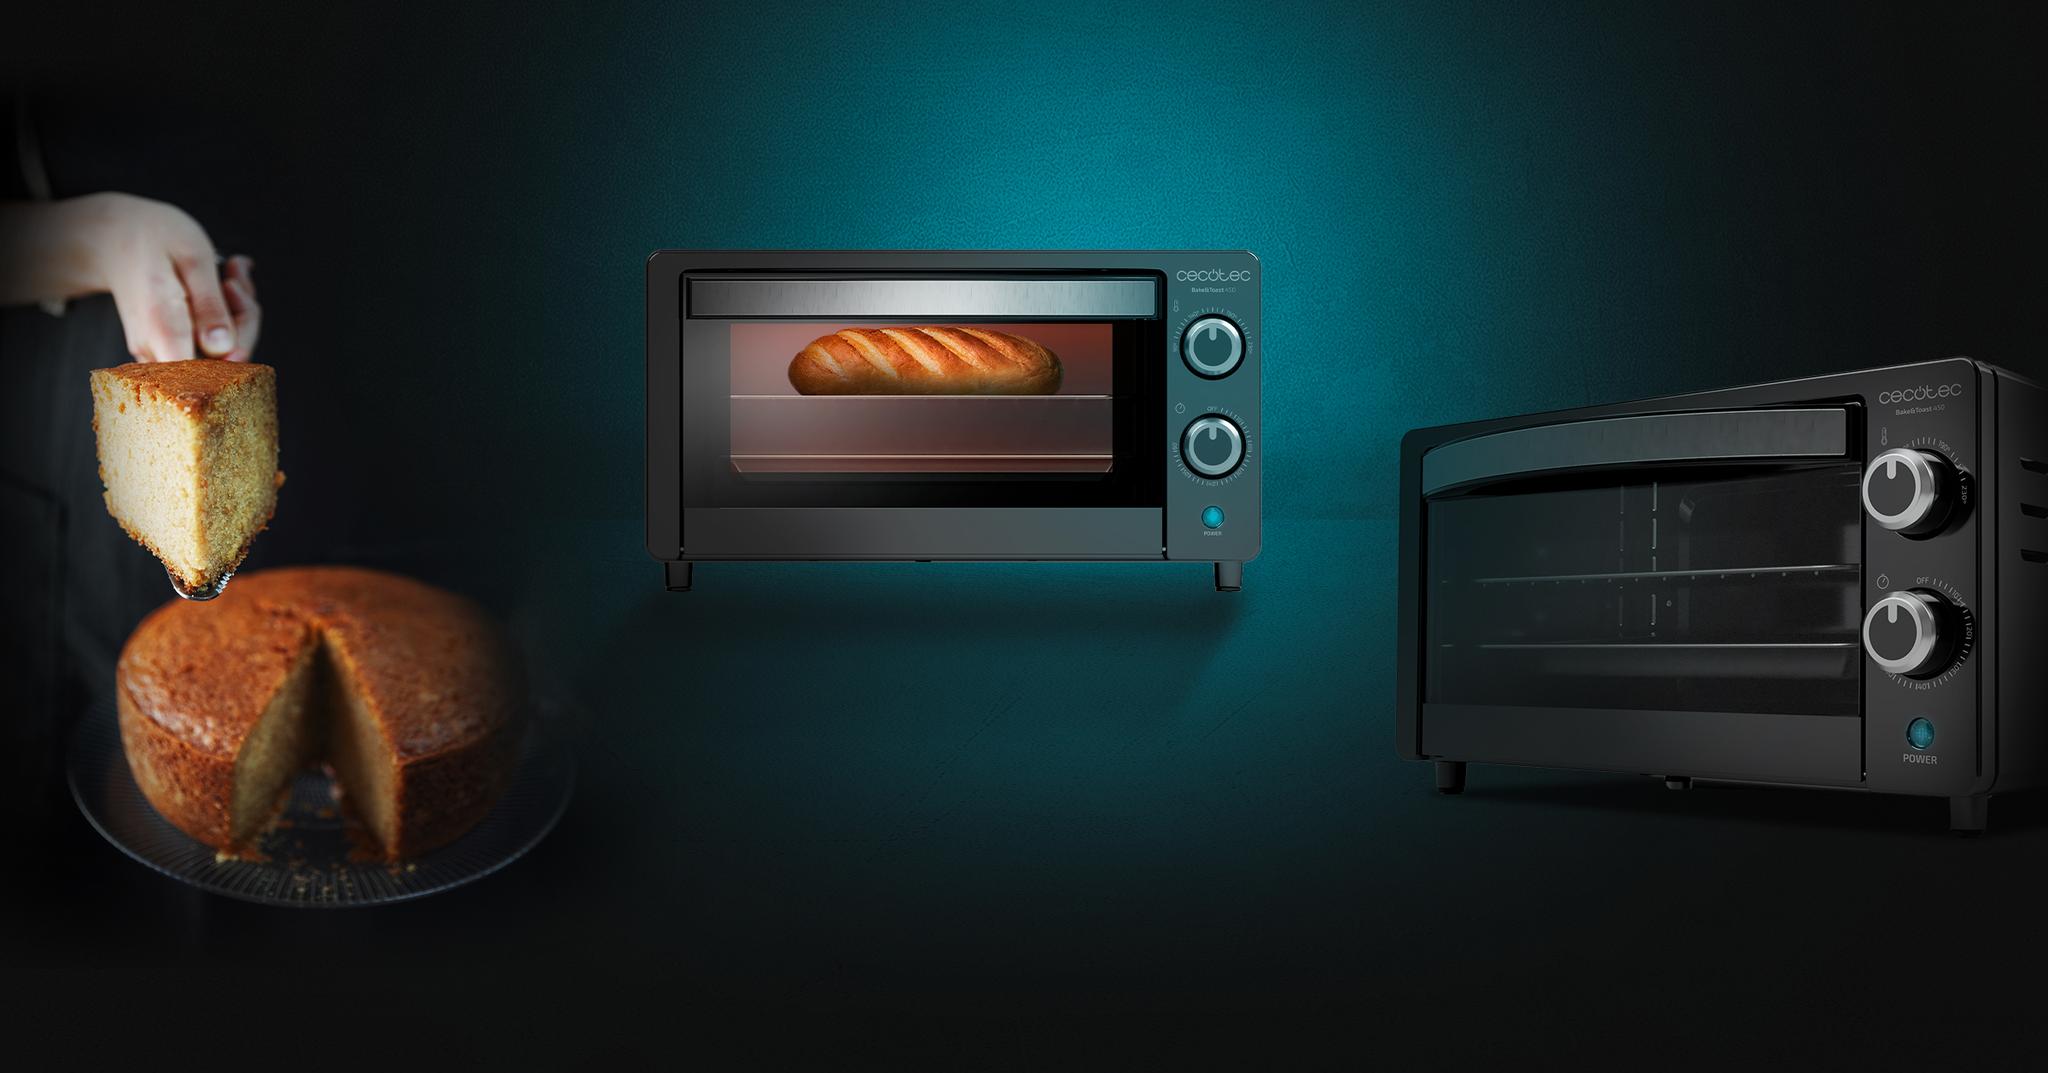 Immagine in primo piano del prodotto Bake&Toast 450